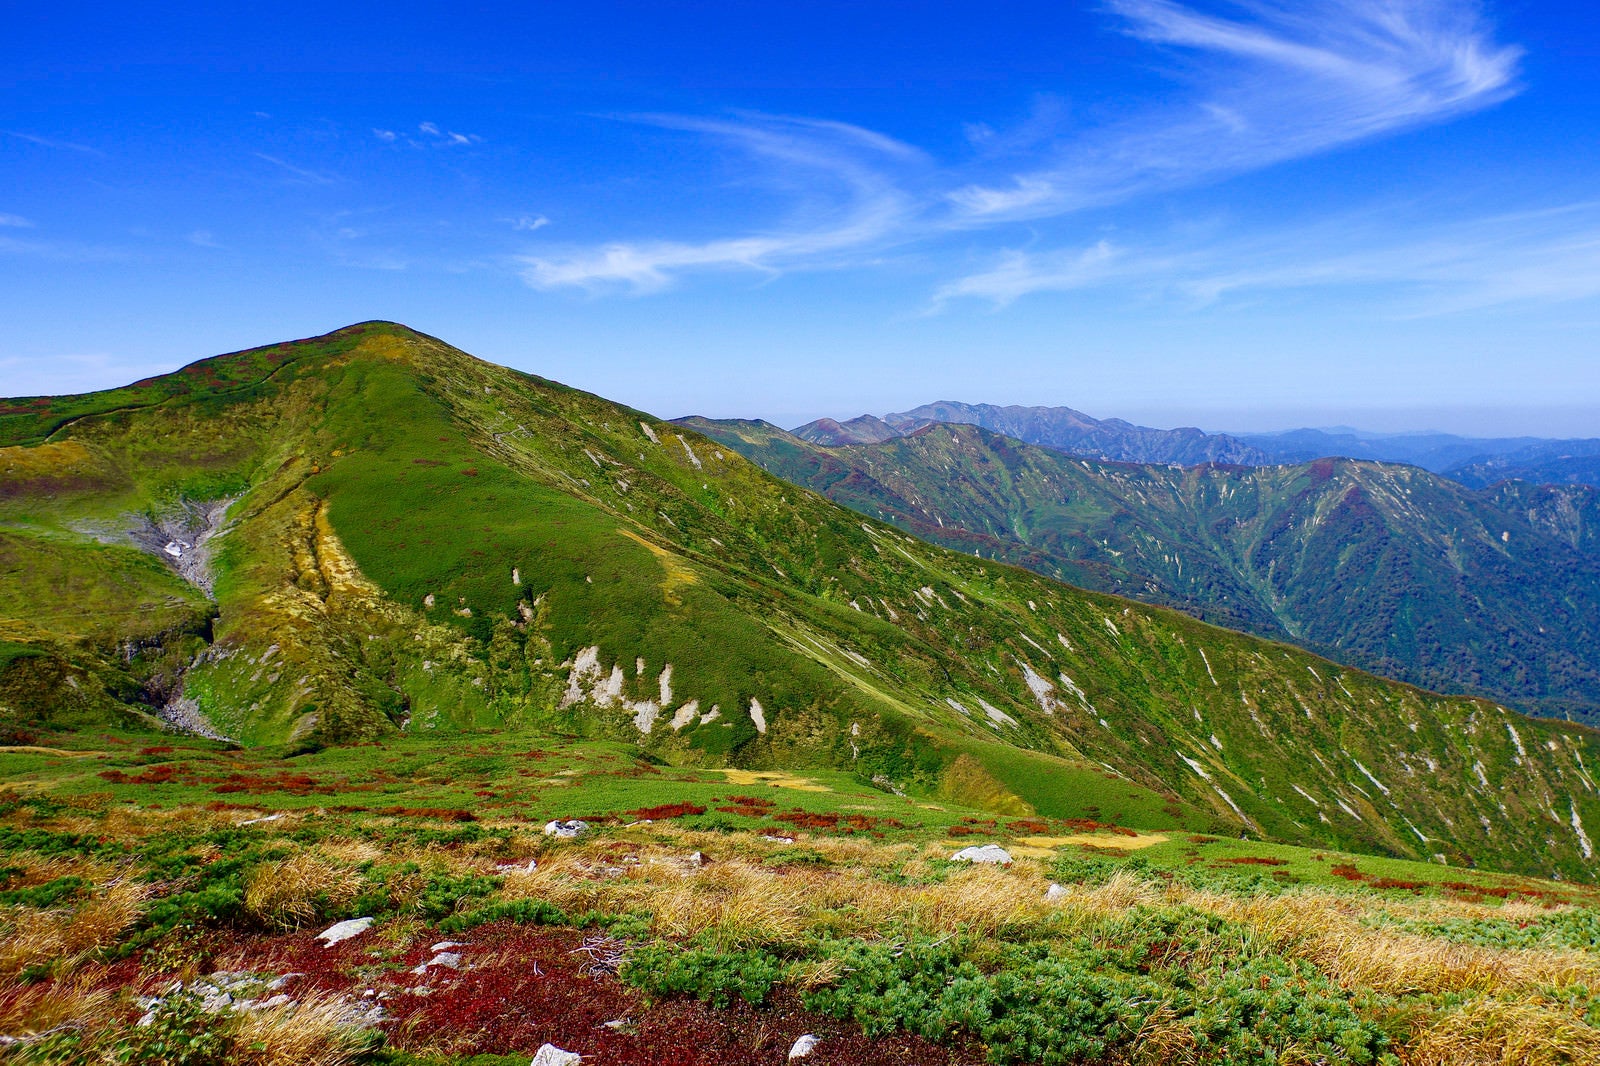 「大朝日岳から見る以東岳方面の景色」の写真